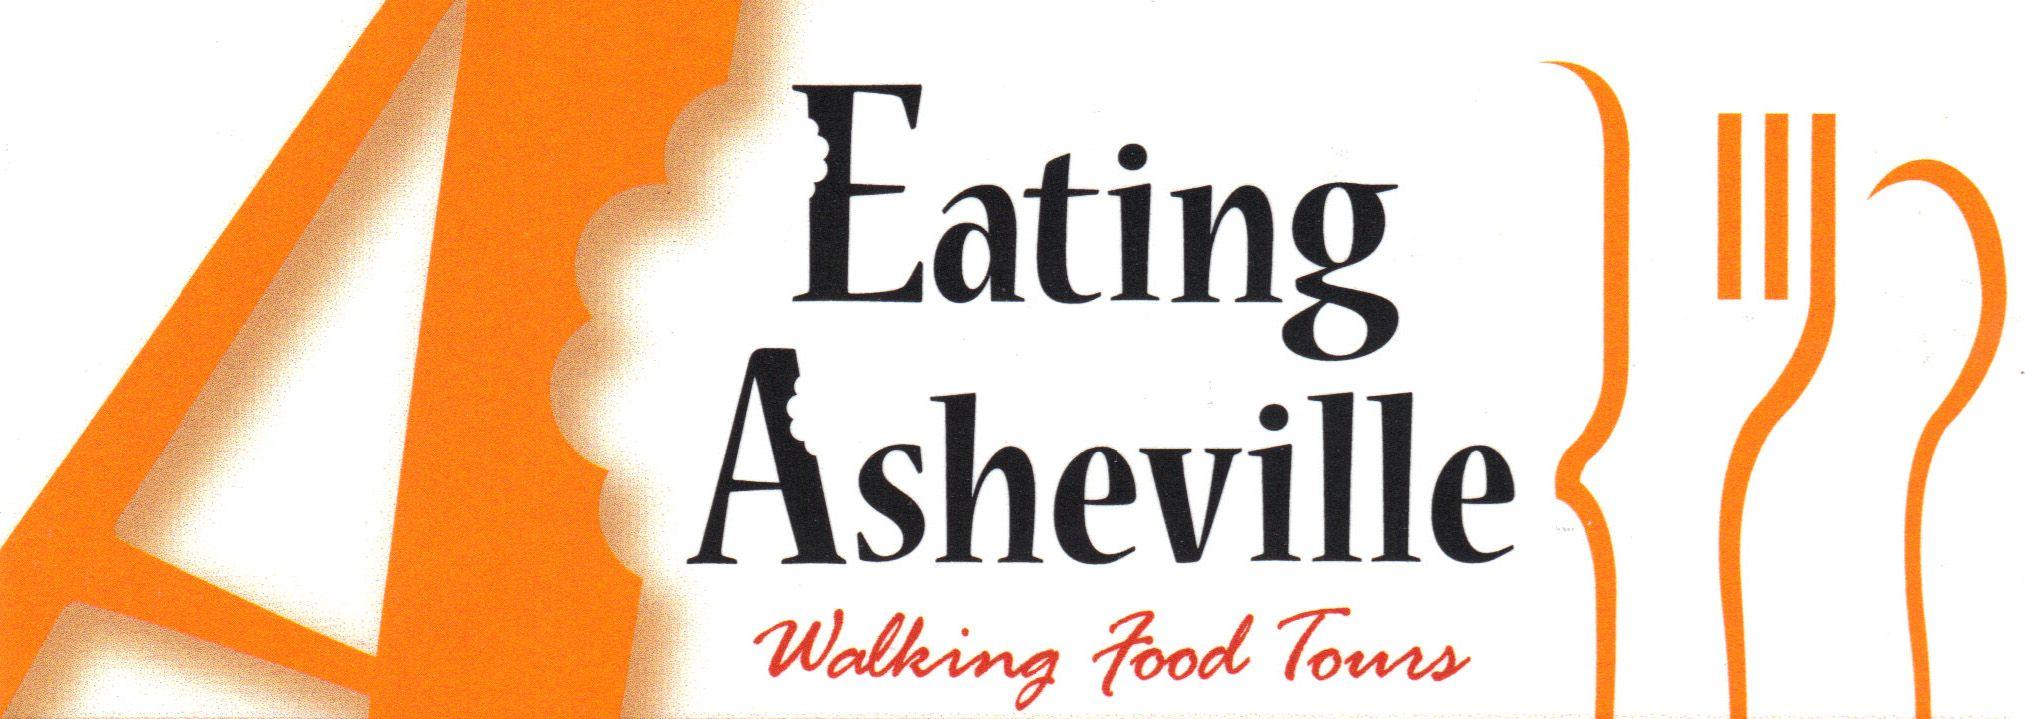 Asheville Logo - Eating Asheville Logo - Reynolds Mansion Bed and Breakfast Inn